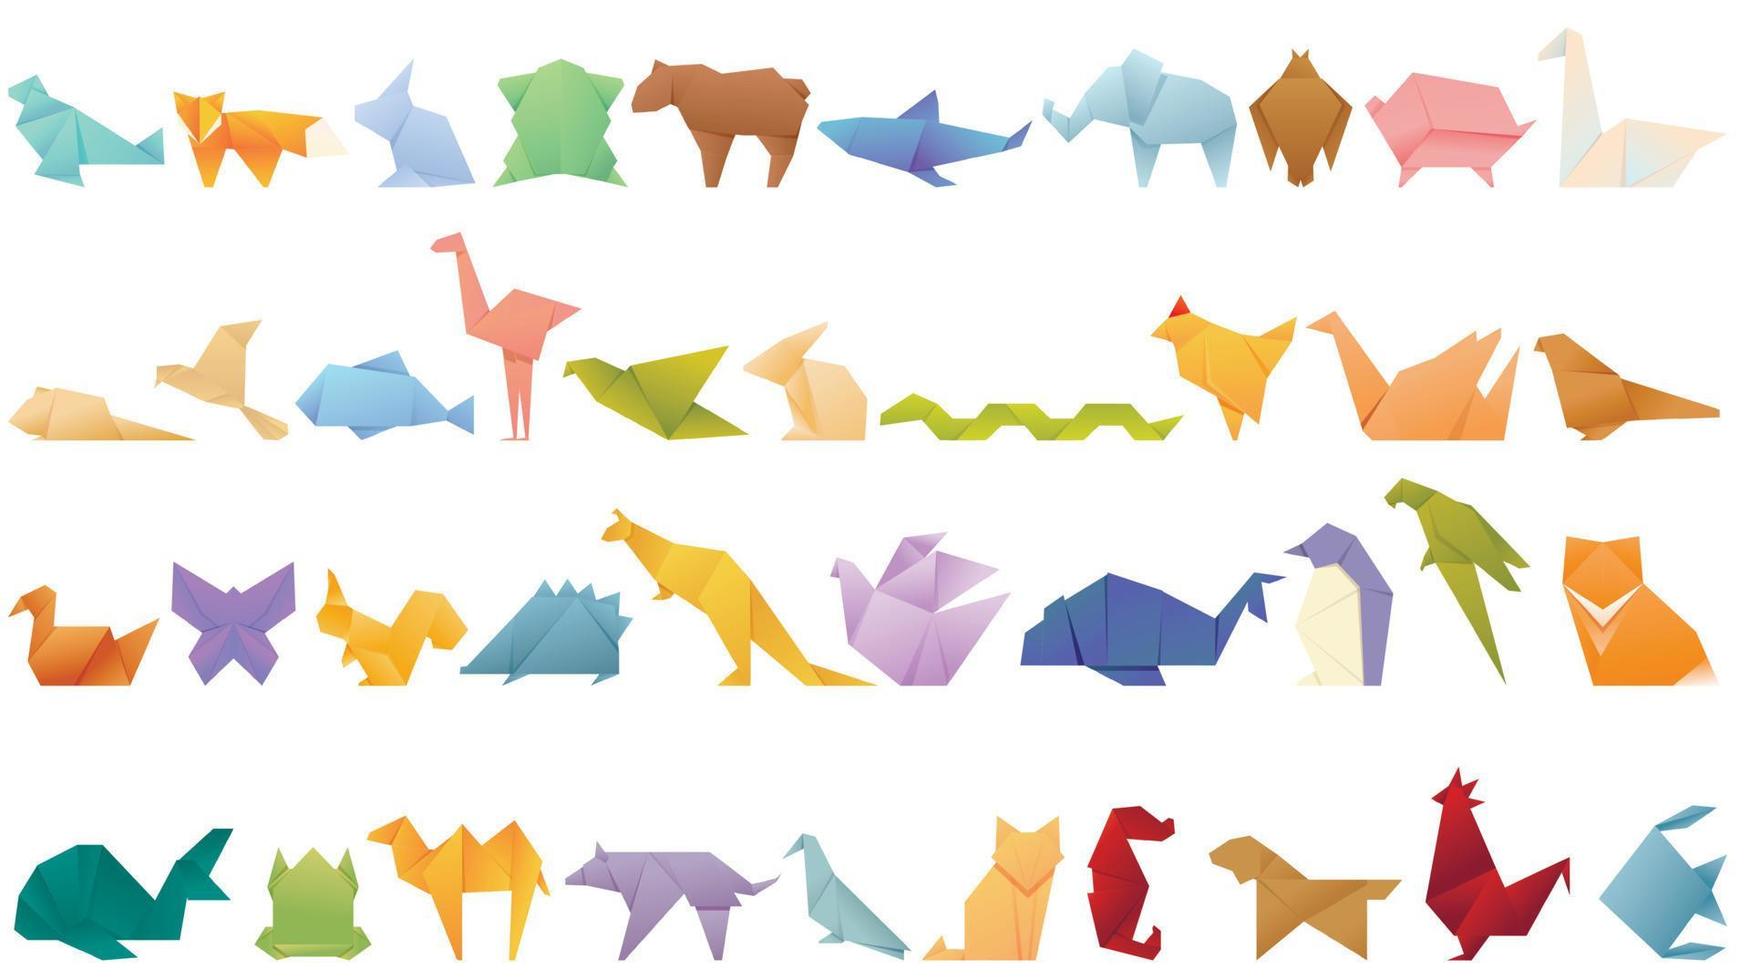 iconos de animales de origami establecen vector de dibujos animados. pez de papel